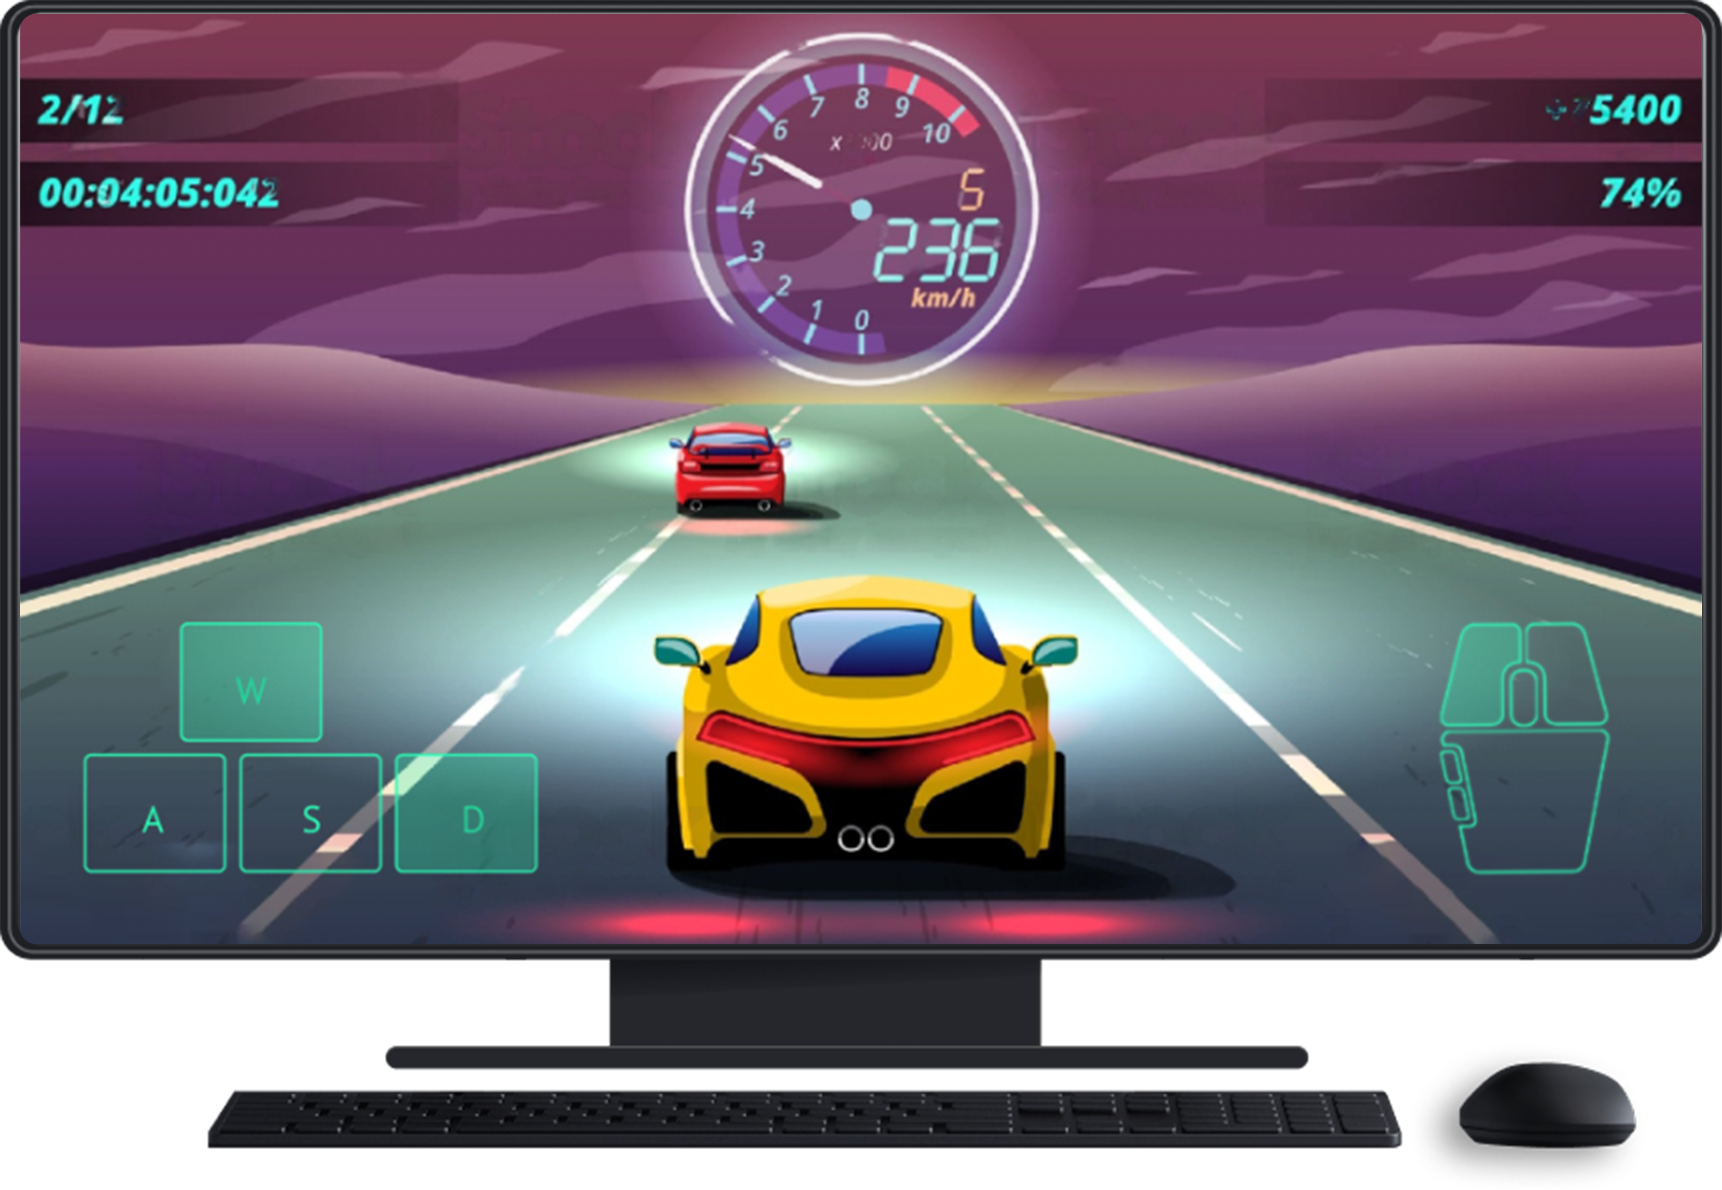 Máy tính để bàn có bàn phím và chuột. Trò chơi đang xuất hiện trên màn hình, cho thấy phương thức nhập bằng màn hình cảm ứng để điều khiển hướng và dùng chuột.